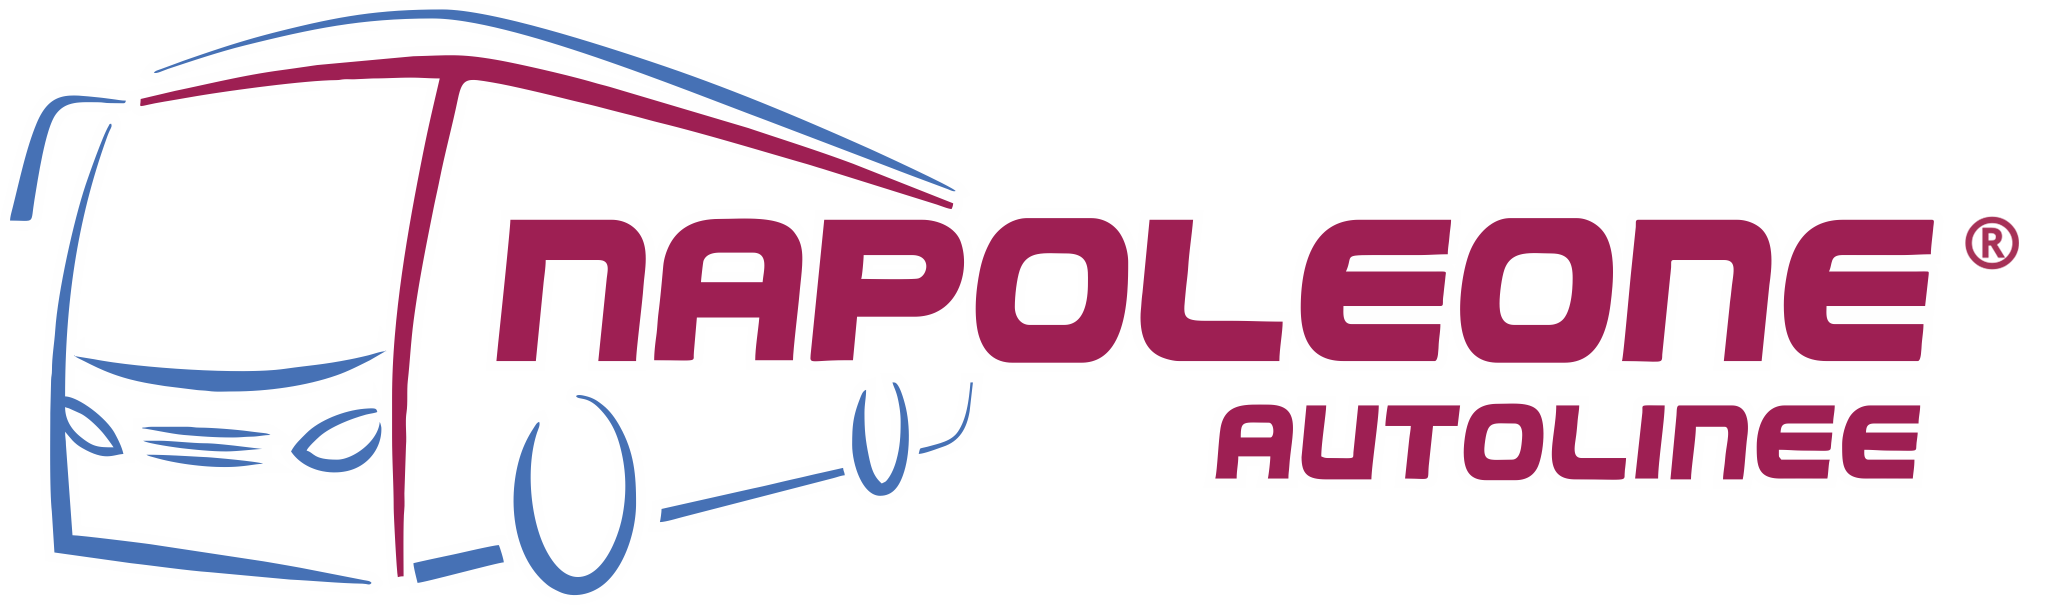 Napoleone Autolinee